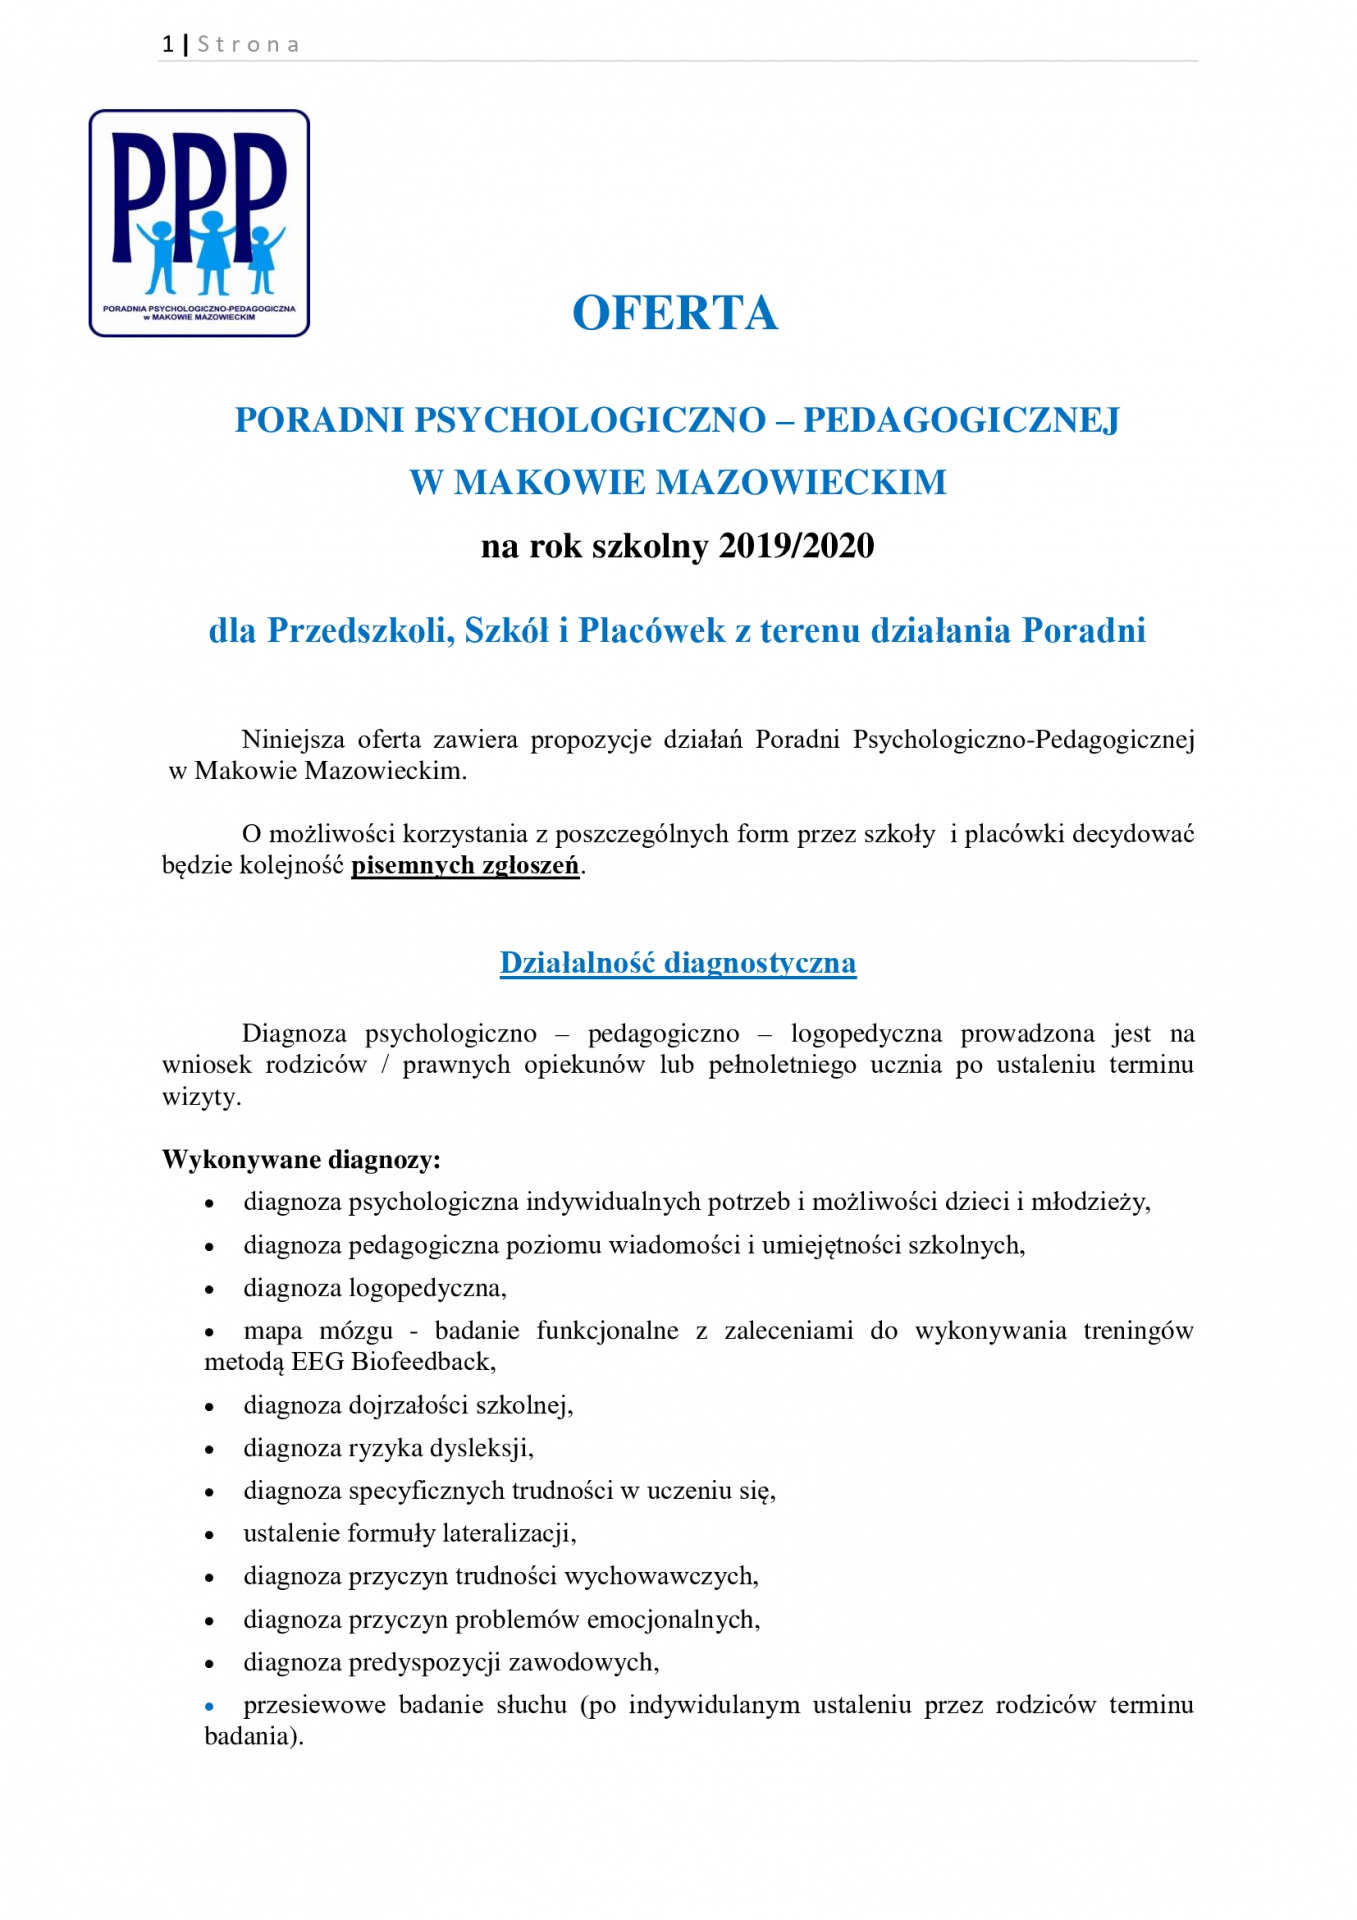 Oferta Poradni Psychologiczno-Pedagogicznej w Makowie Mazowieckim. Strona 1